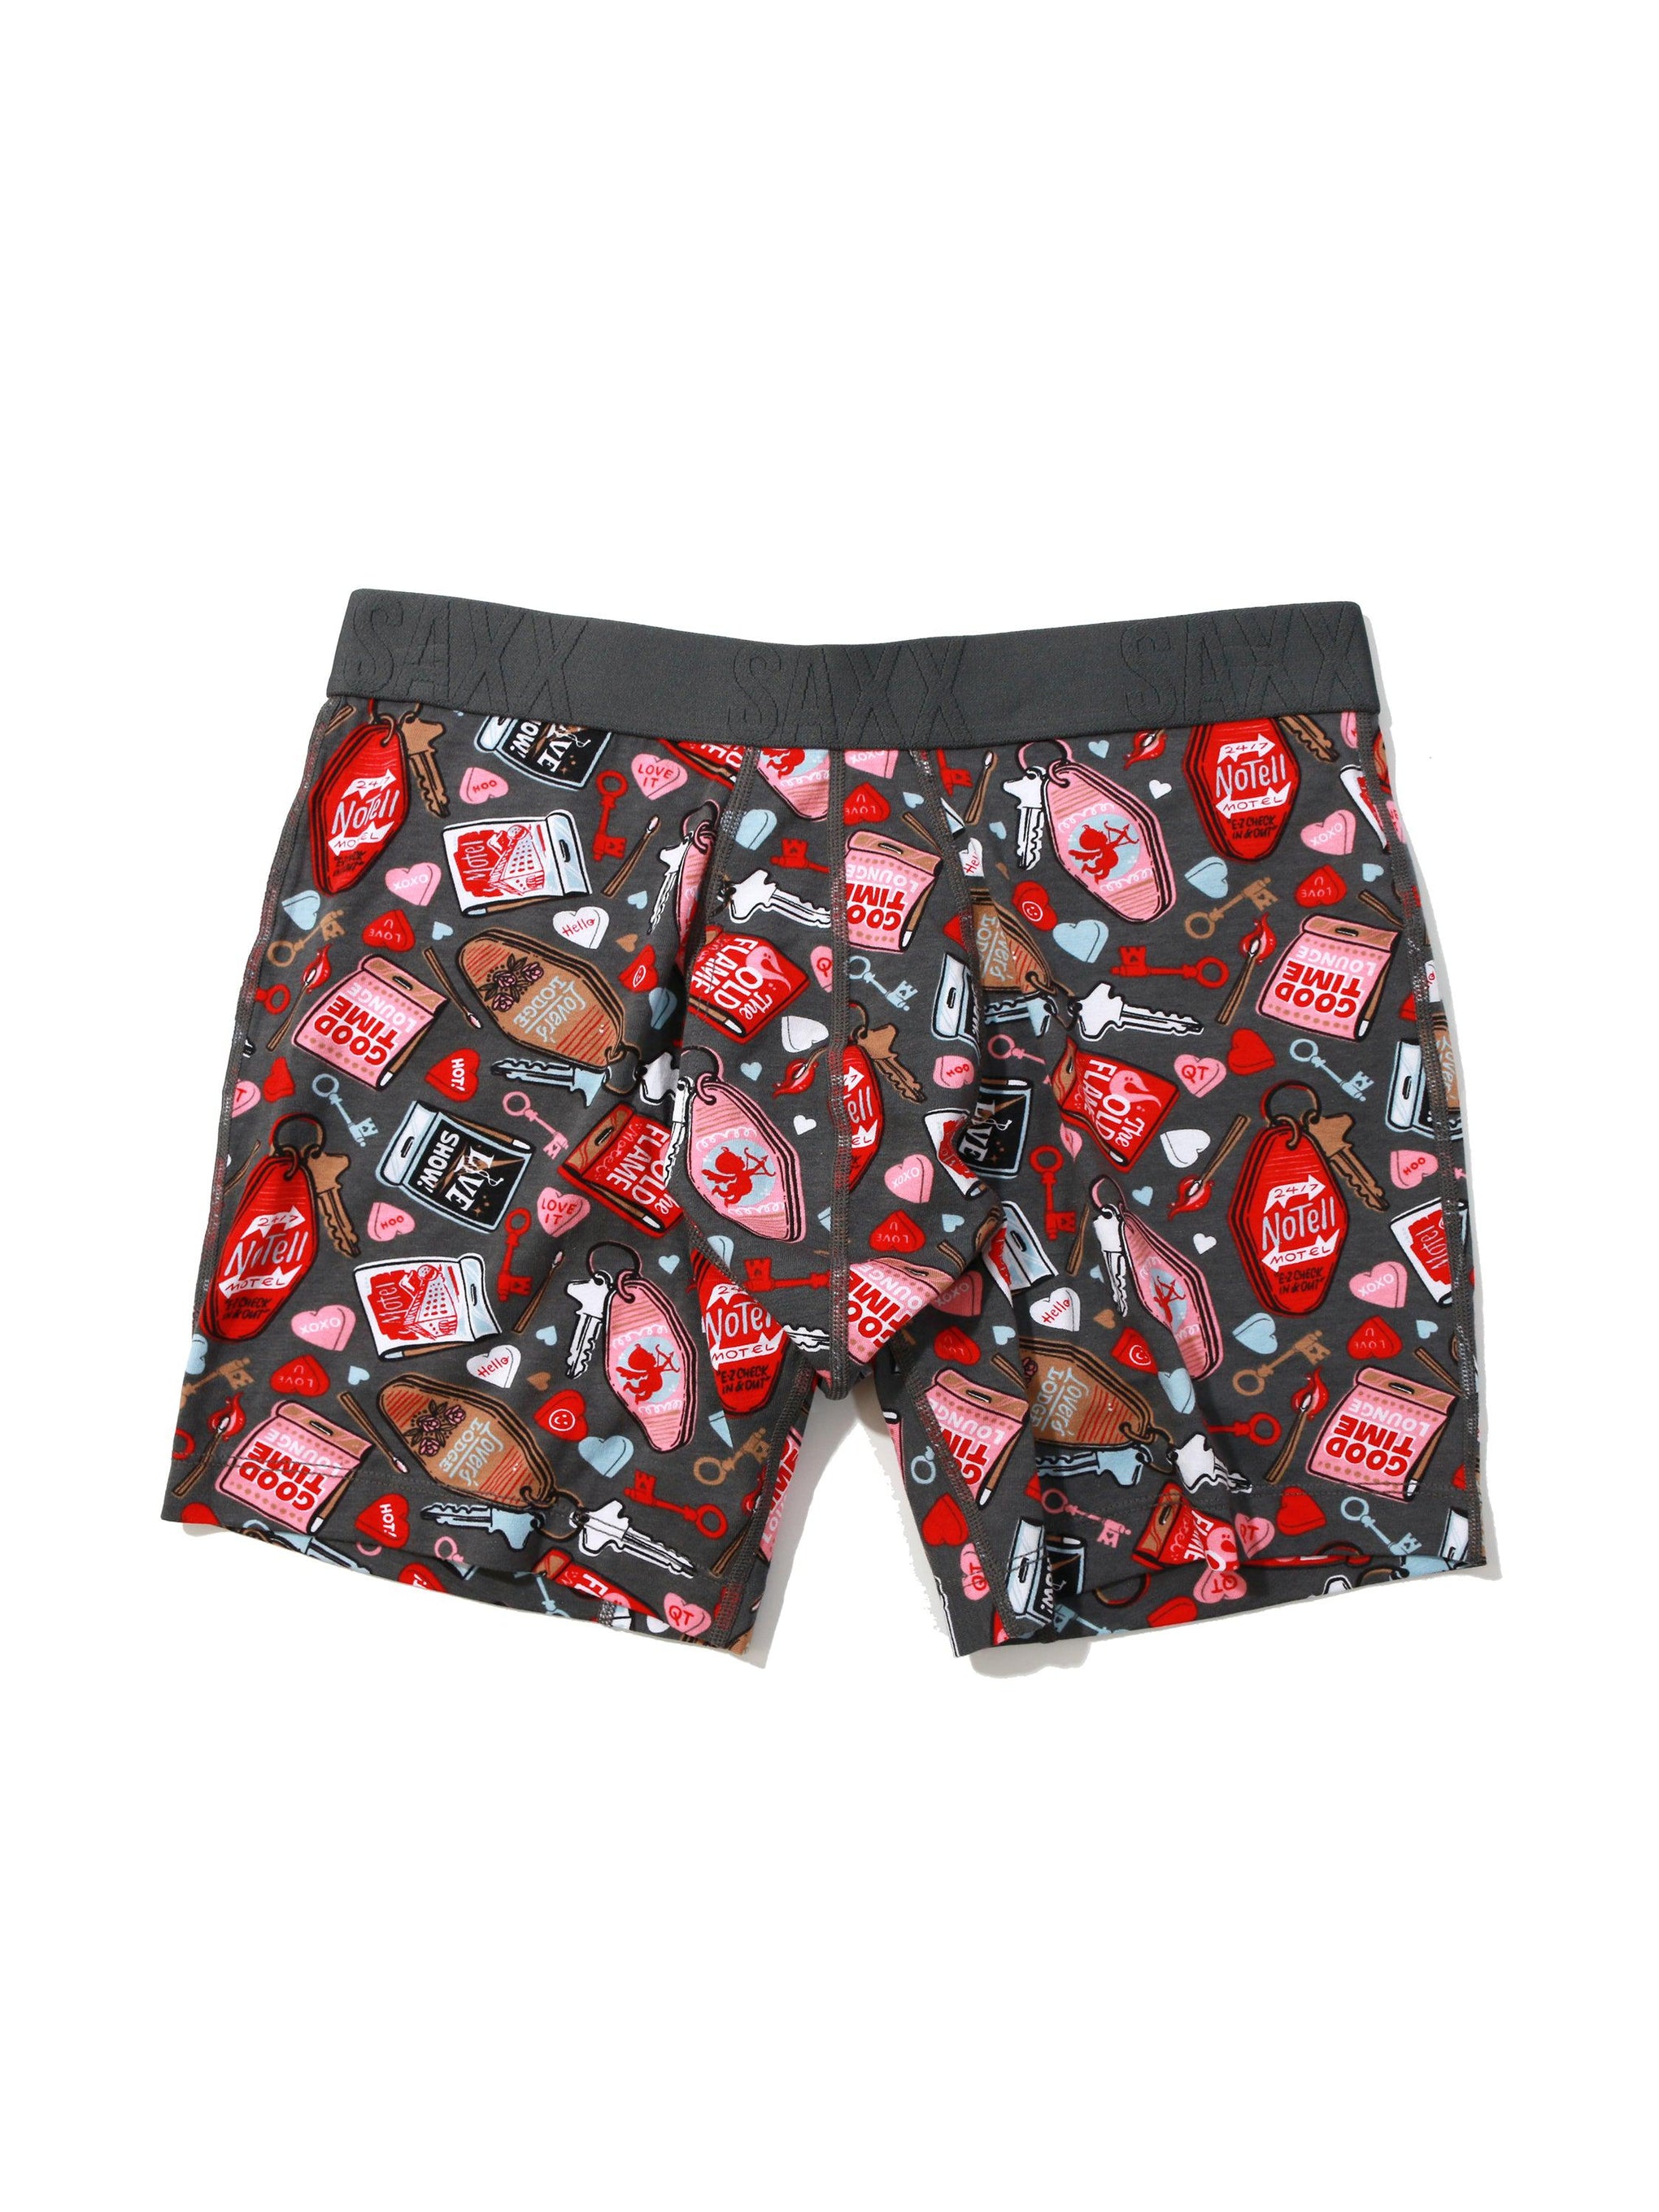 Men's Sexy Underwear - Hello Mesh Boxer Briefs 4-Pack – Oh My!